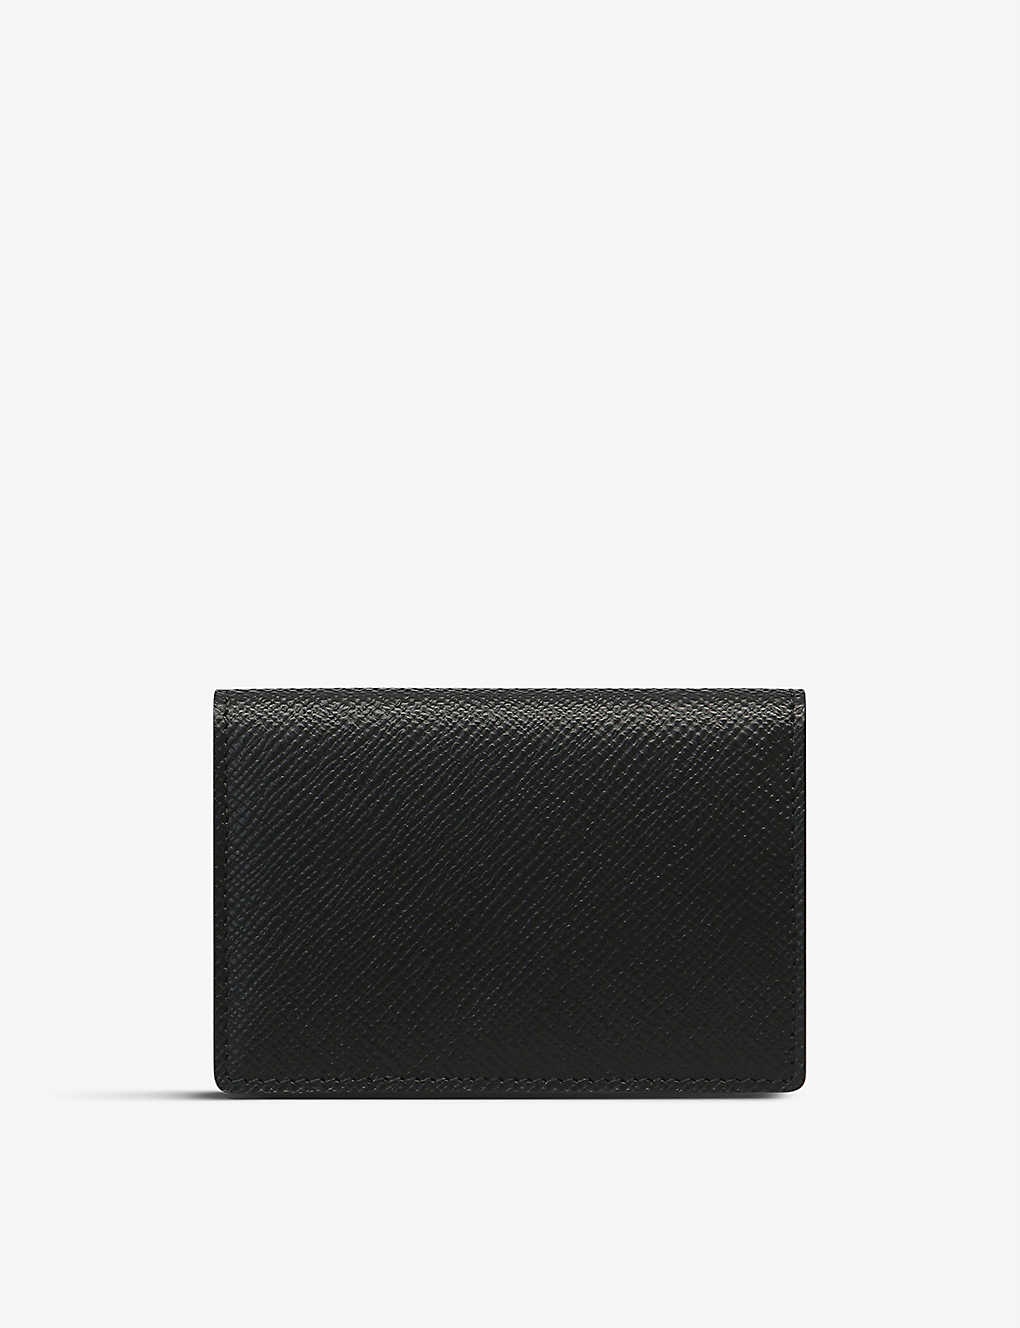 Panama folded leather card case - 3